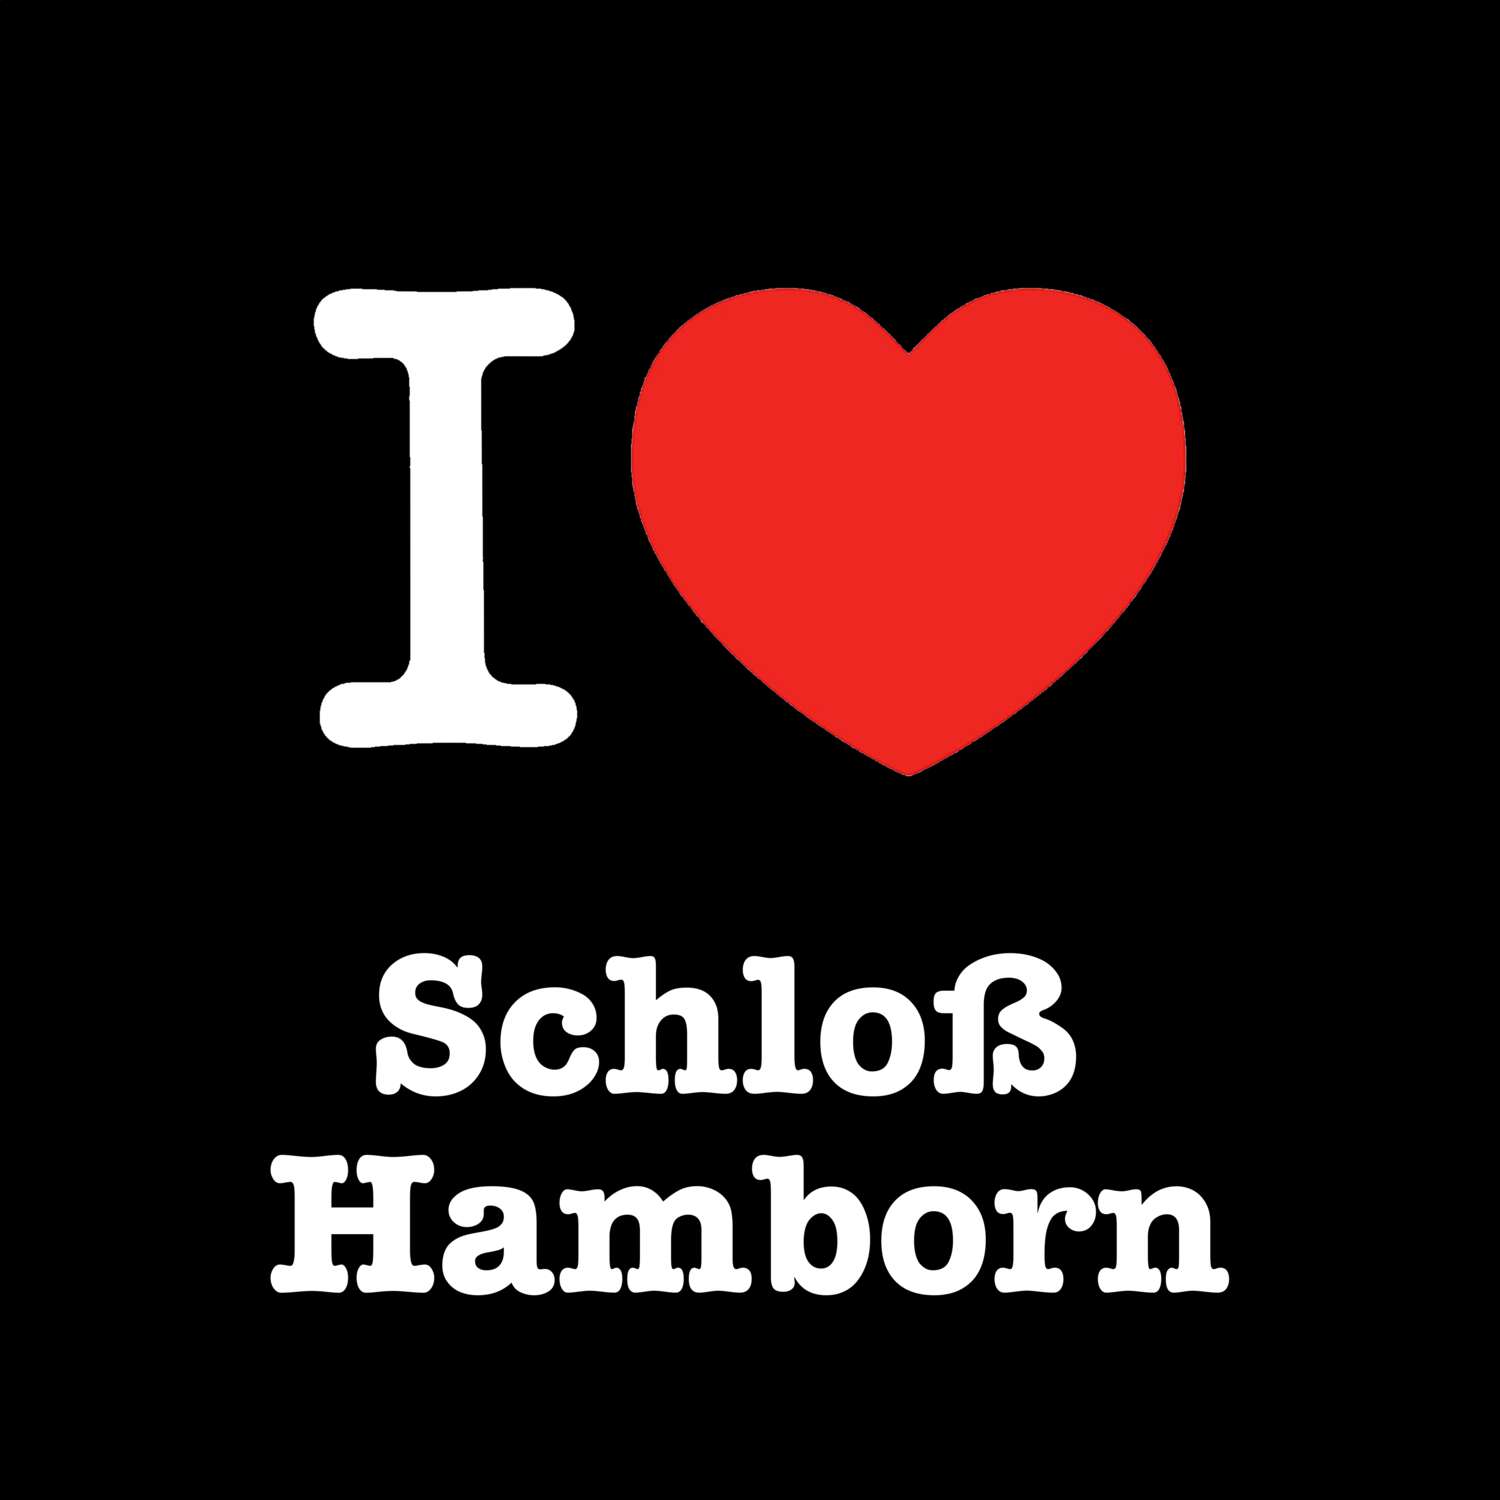 Schloß Hamborn T-Shirt »I love«